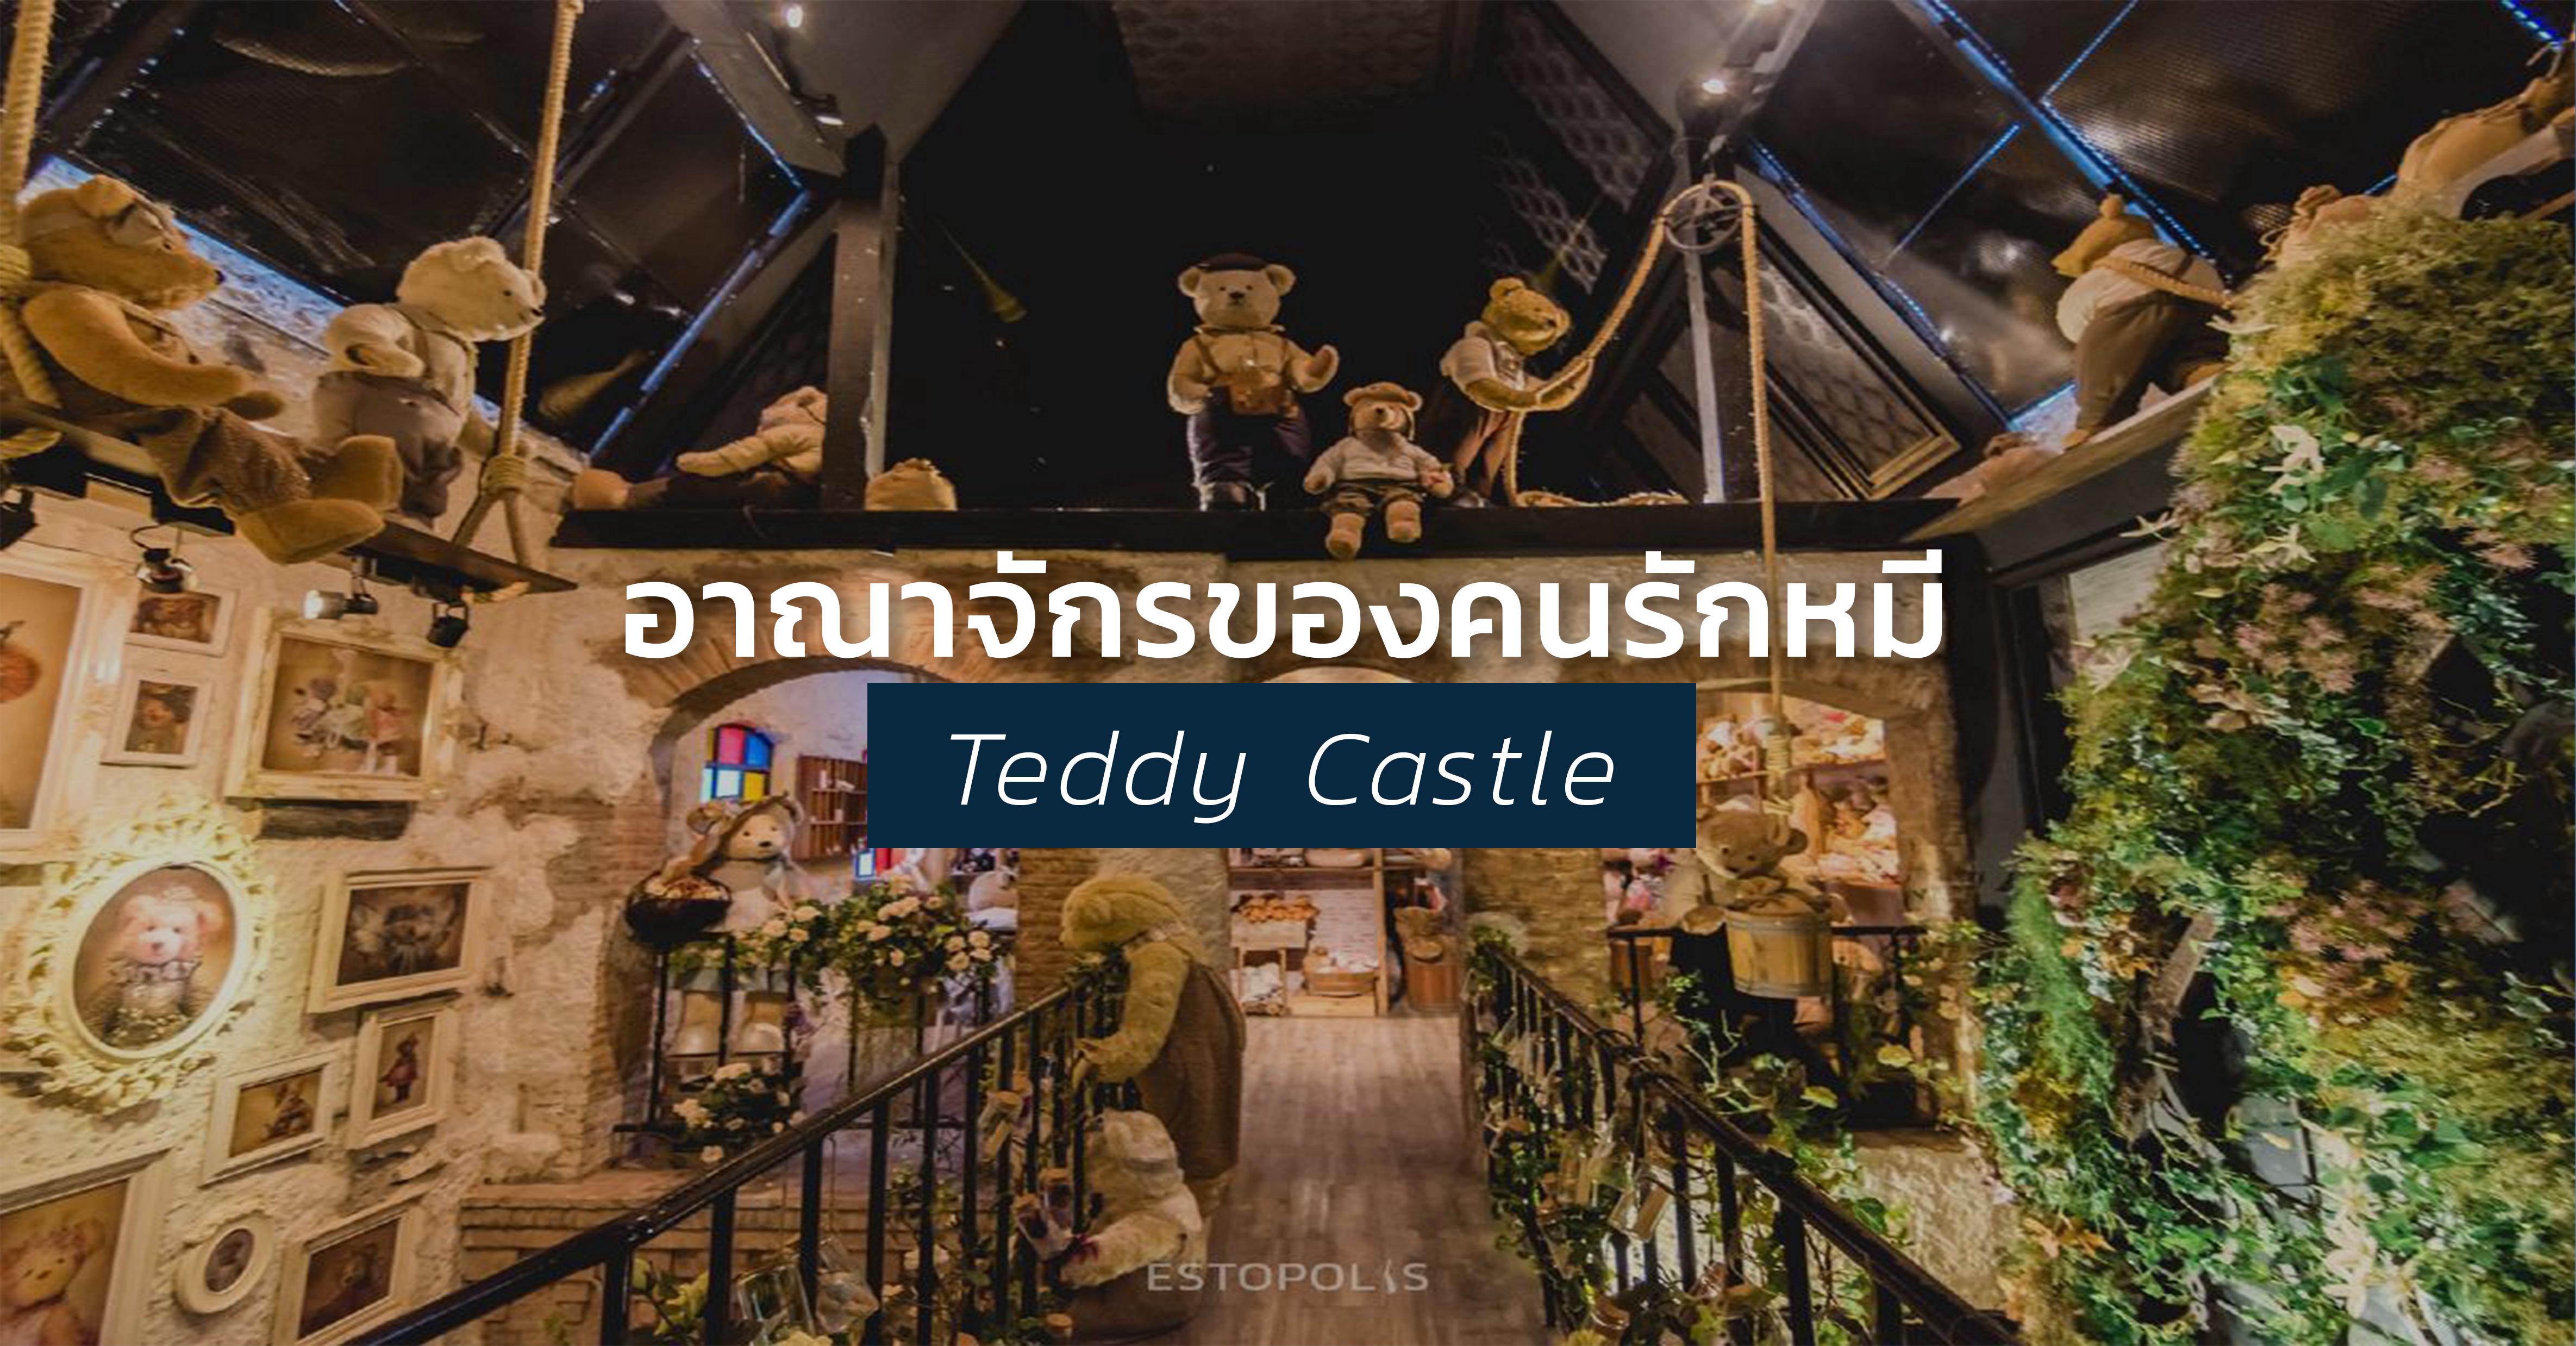 รูปบทความ ชวนกันกอดหมี ที่ Teddy Castle อาณาจักรของคนรักหมี ใกล้ BTS ทองหล่อ